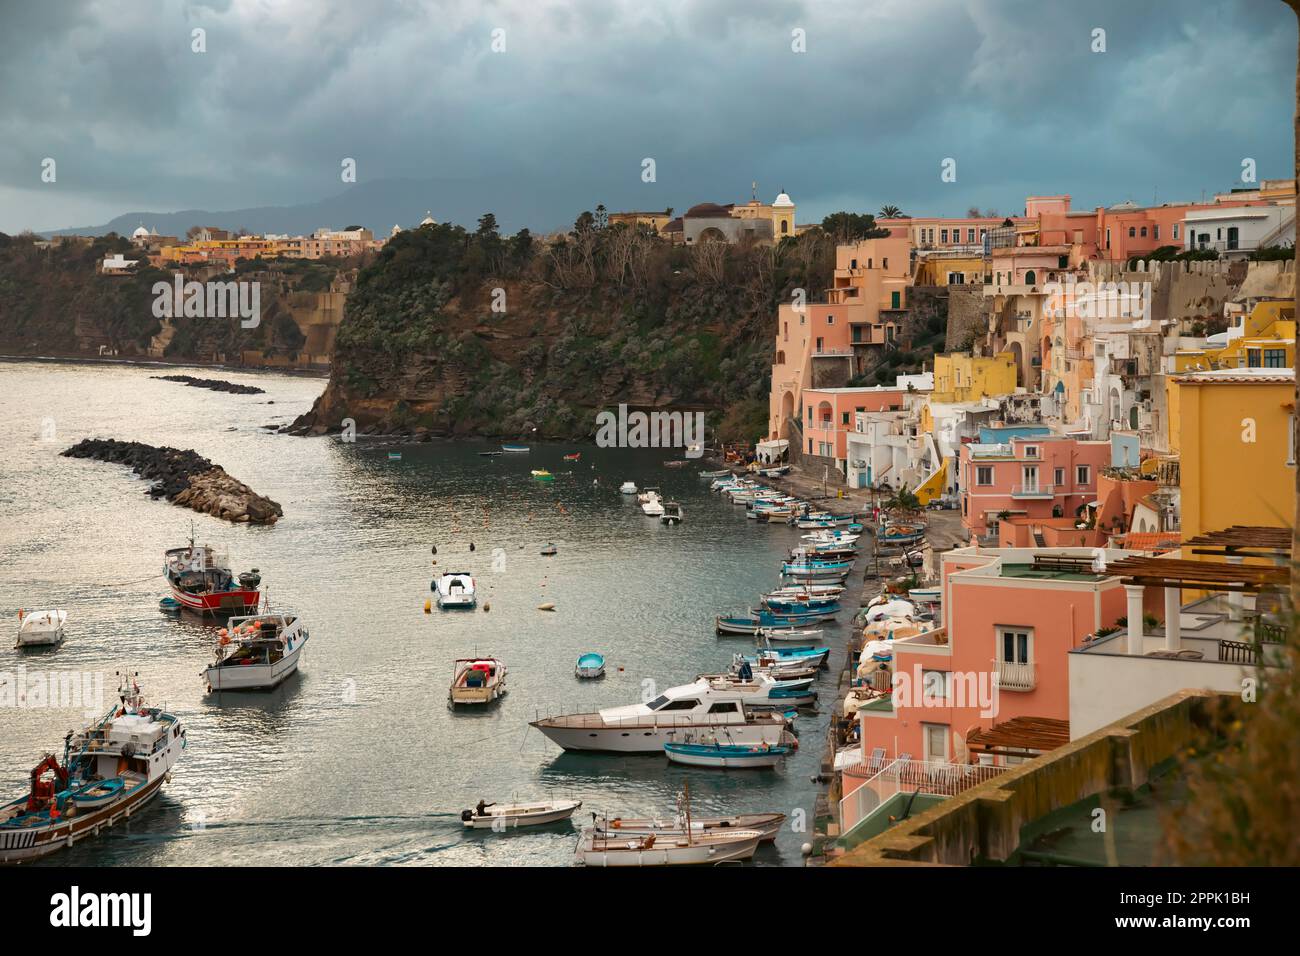 Beau village de pêcheurs, Marina Corricella sur l'île de Procida, baie de Naples, Italie. Banque D'Images